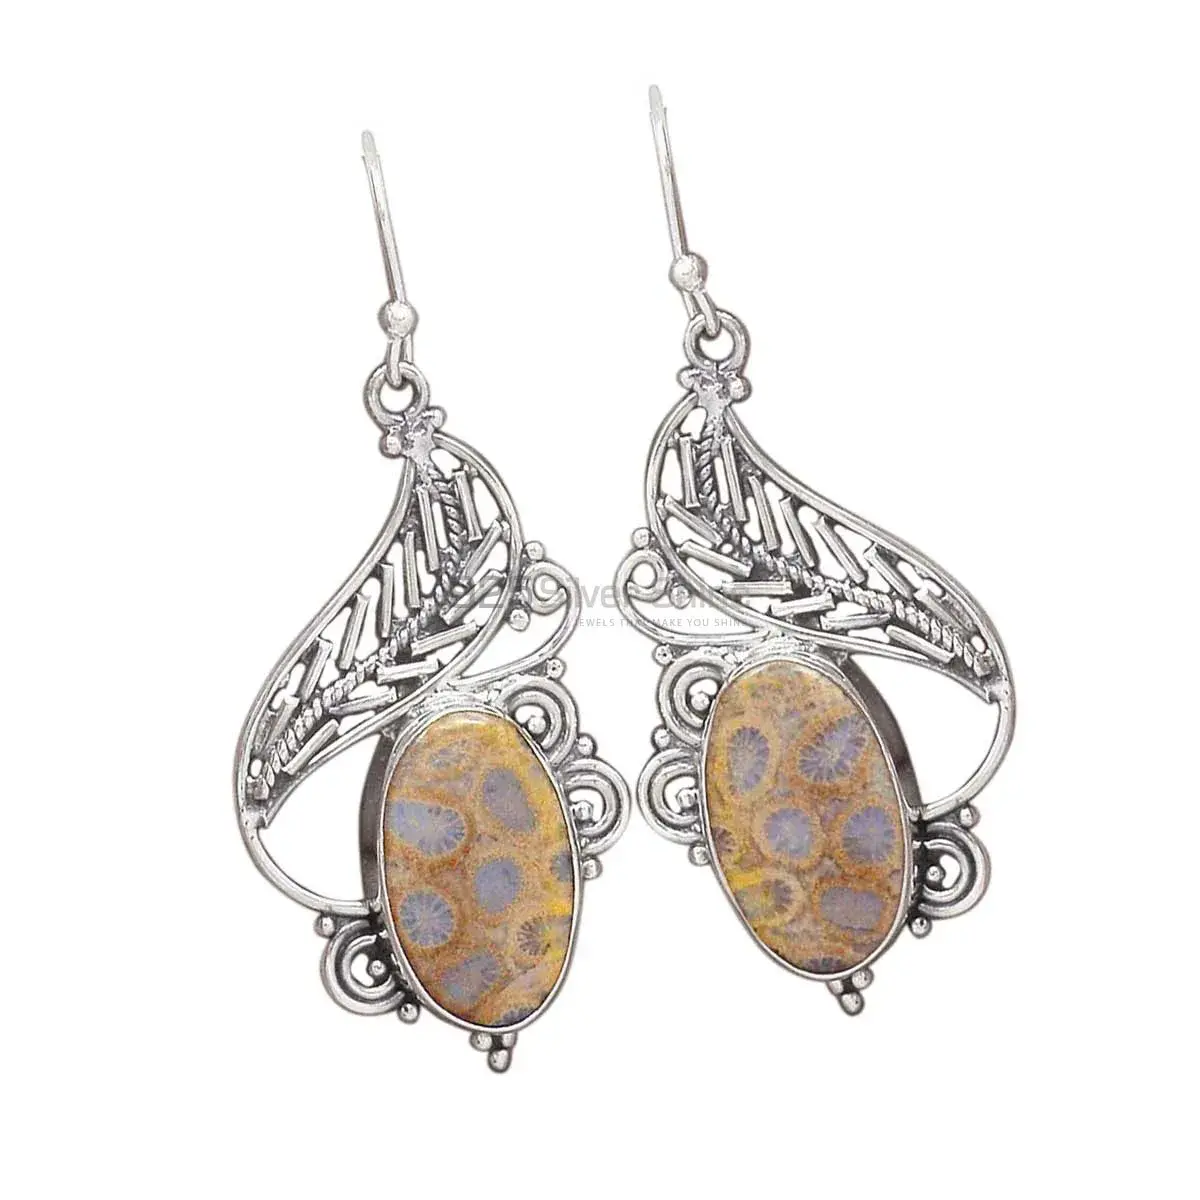 Best Design 925 Sterling Silver Handmade Earrings Suppliers In Ocean Jasper Gemstone Jewelry 925SE2954